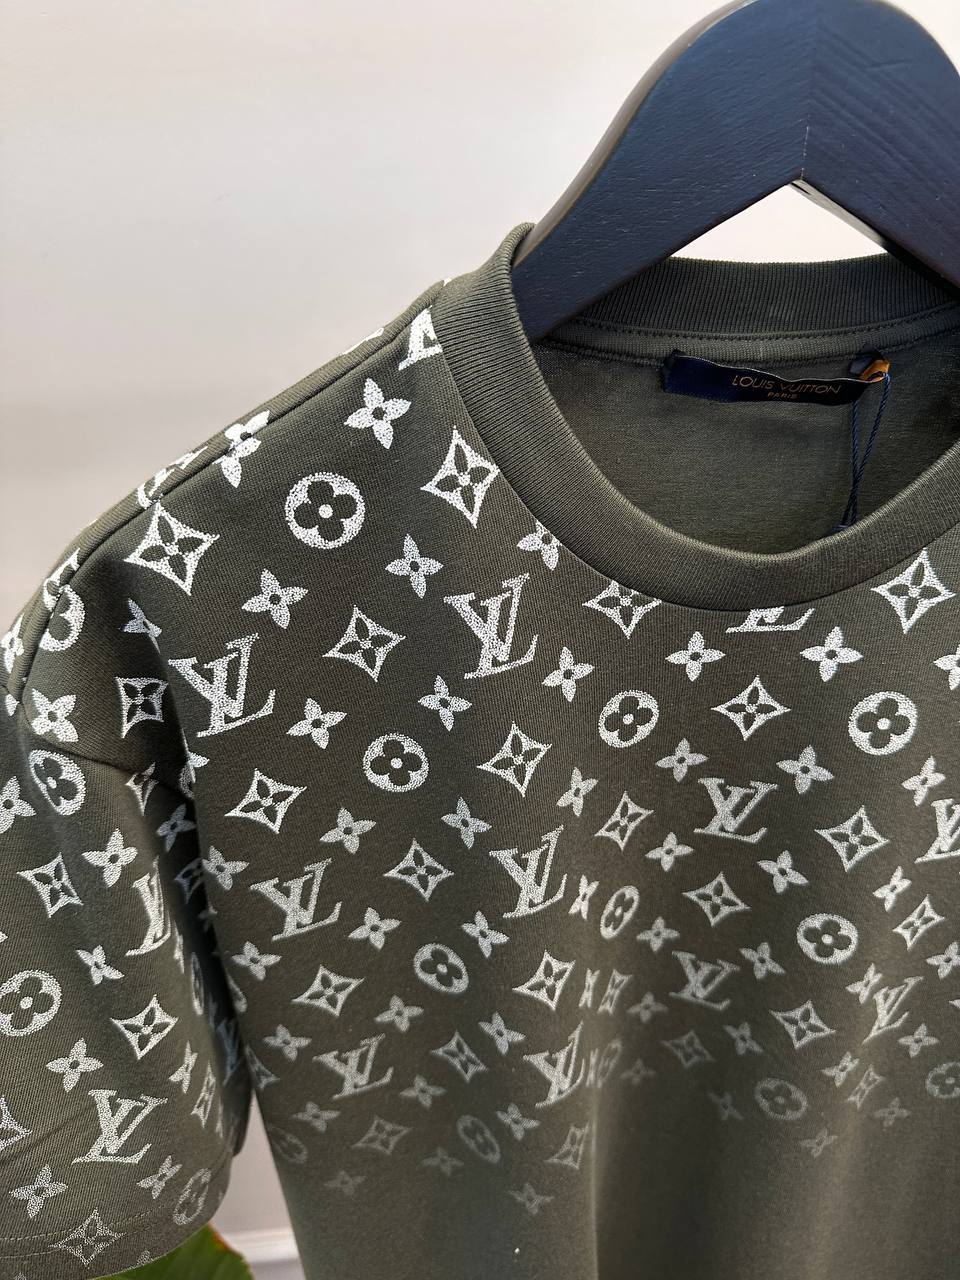 Louis Vuitton T-Shirt